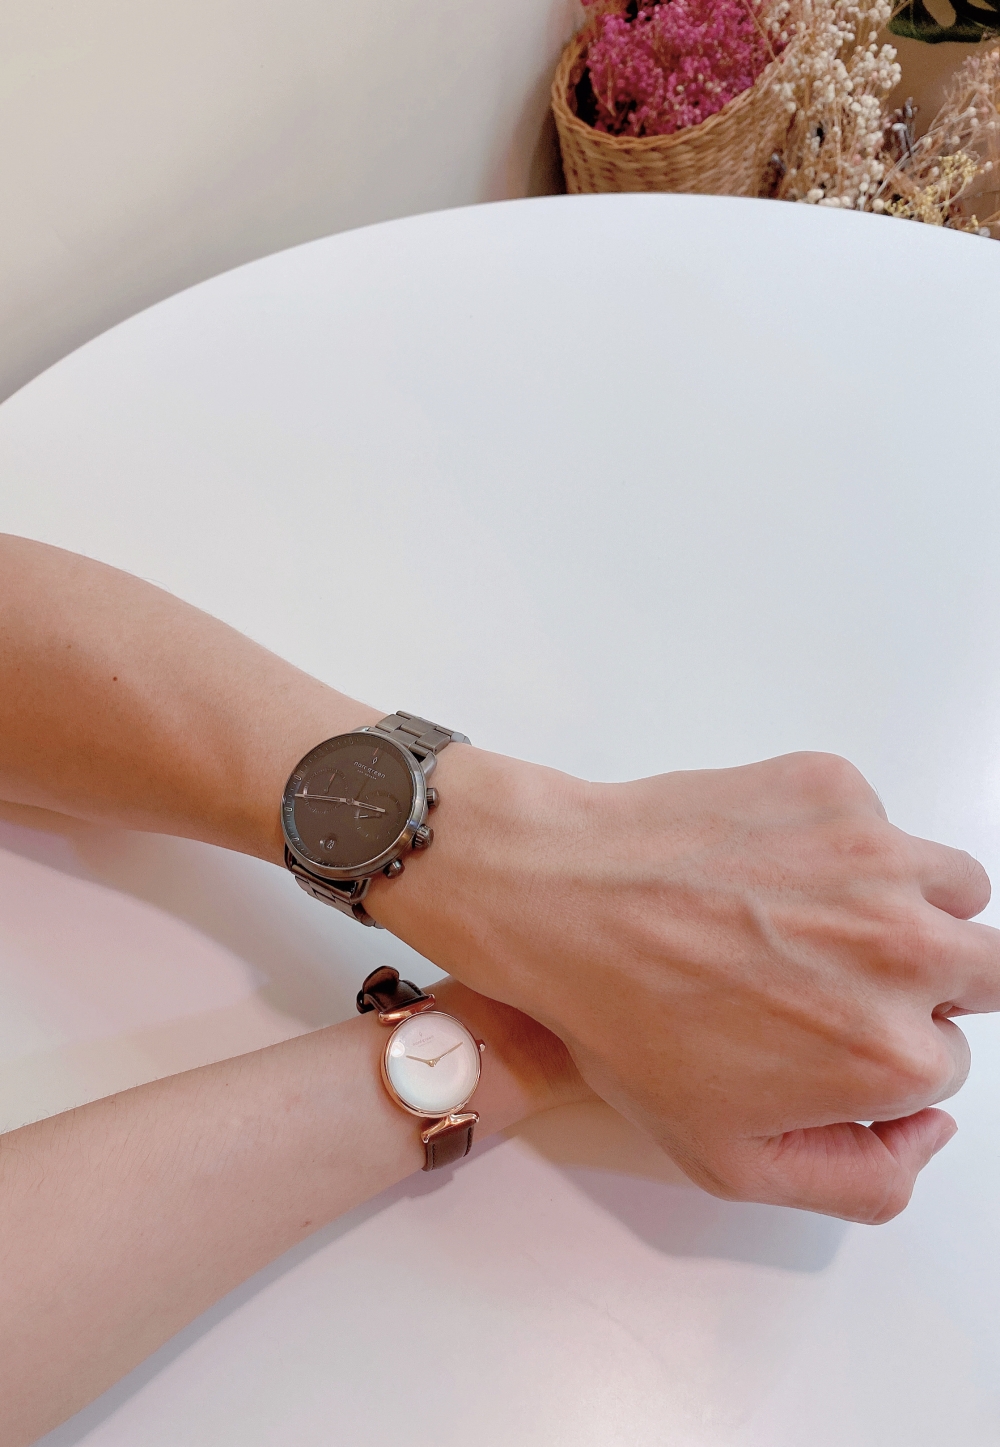 【情人節禮物】nordgreen丹麥設計文青錶款-The PIONEER 送給另一半的帥氣錶款首選